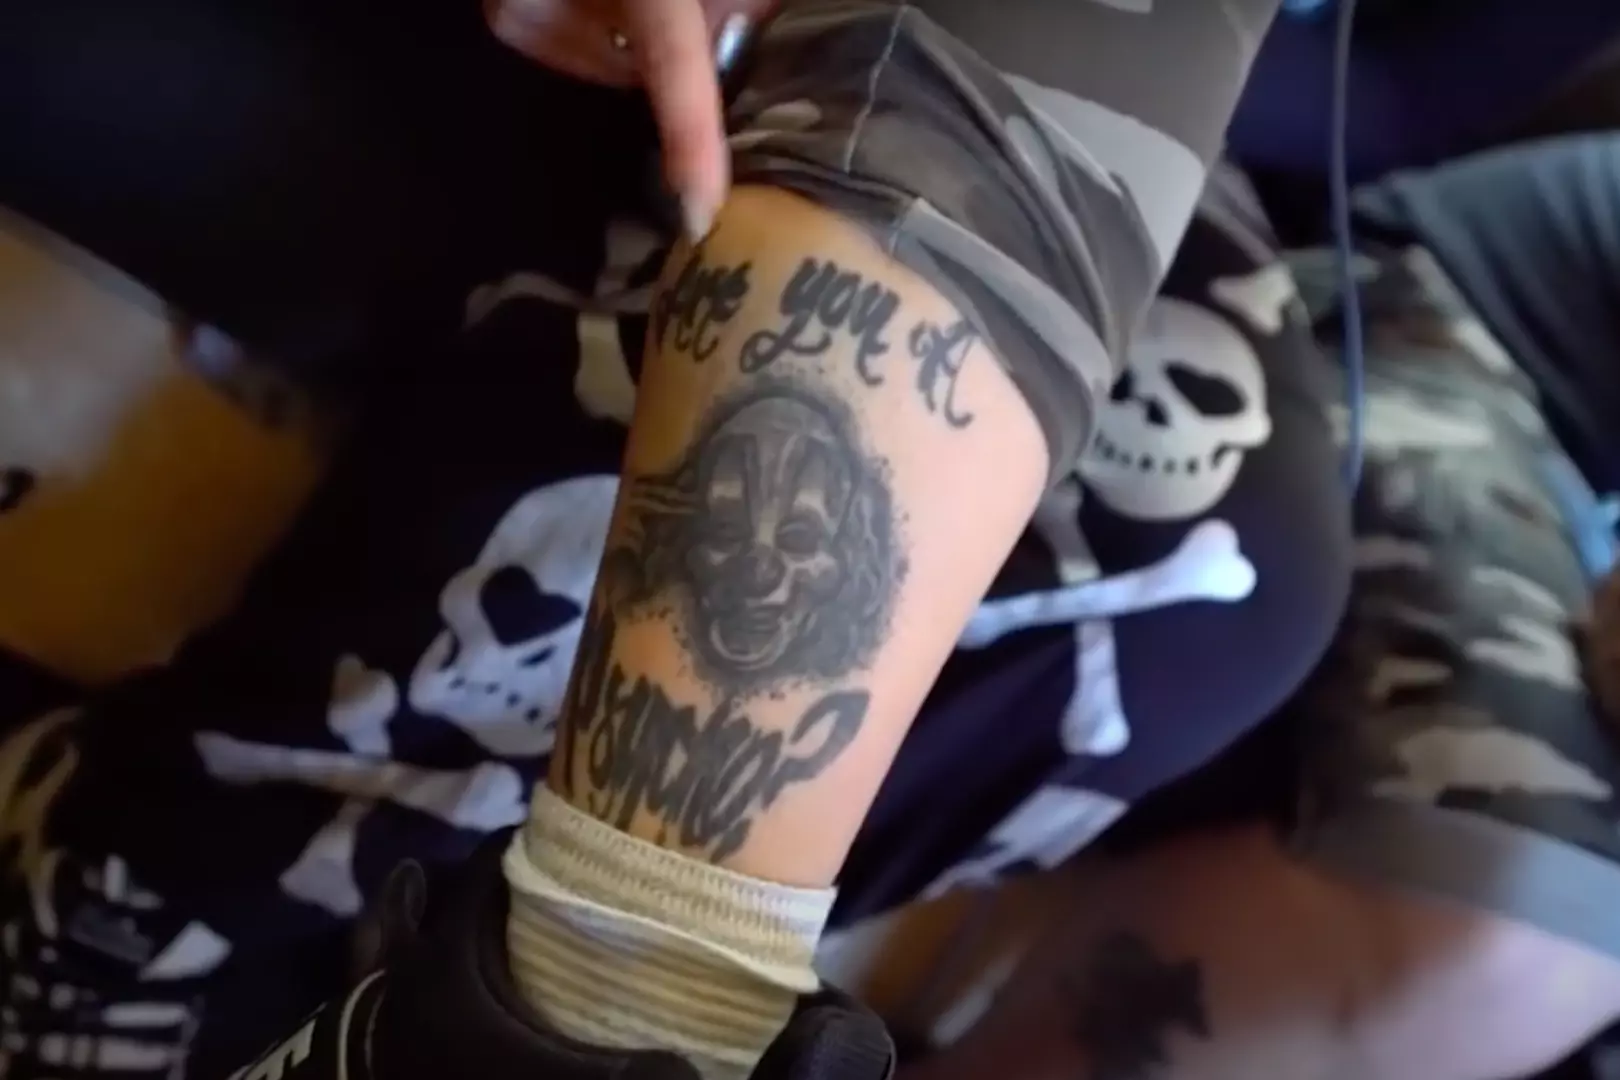 Celebrity Skin: Corey Taylor - Slipknot - Tattoo | Big Tattoo Planet